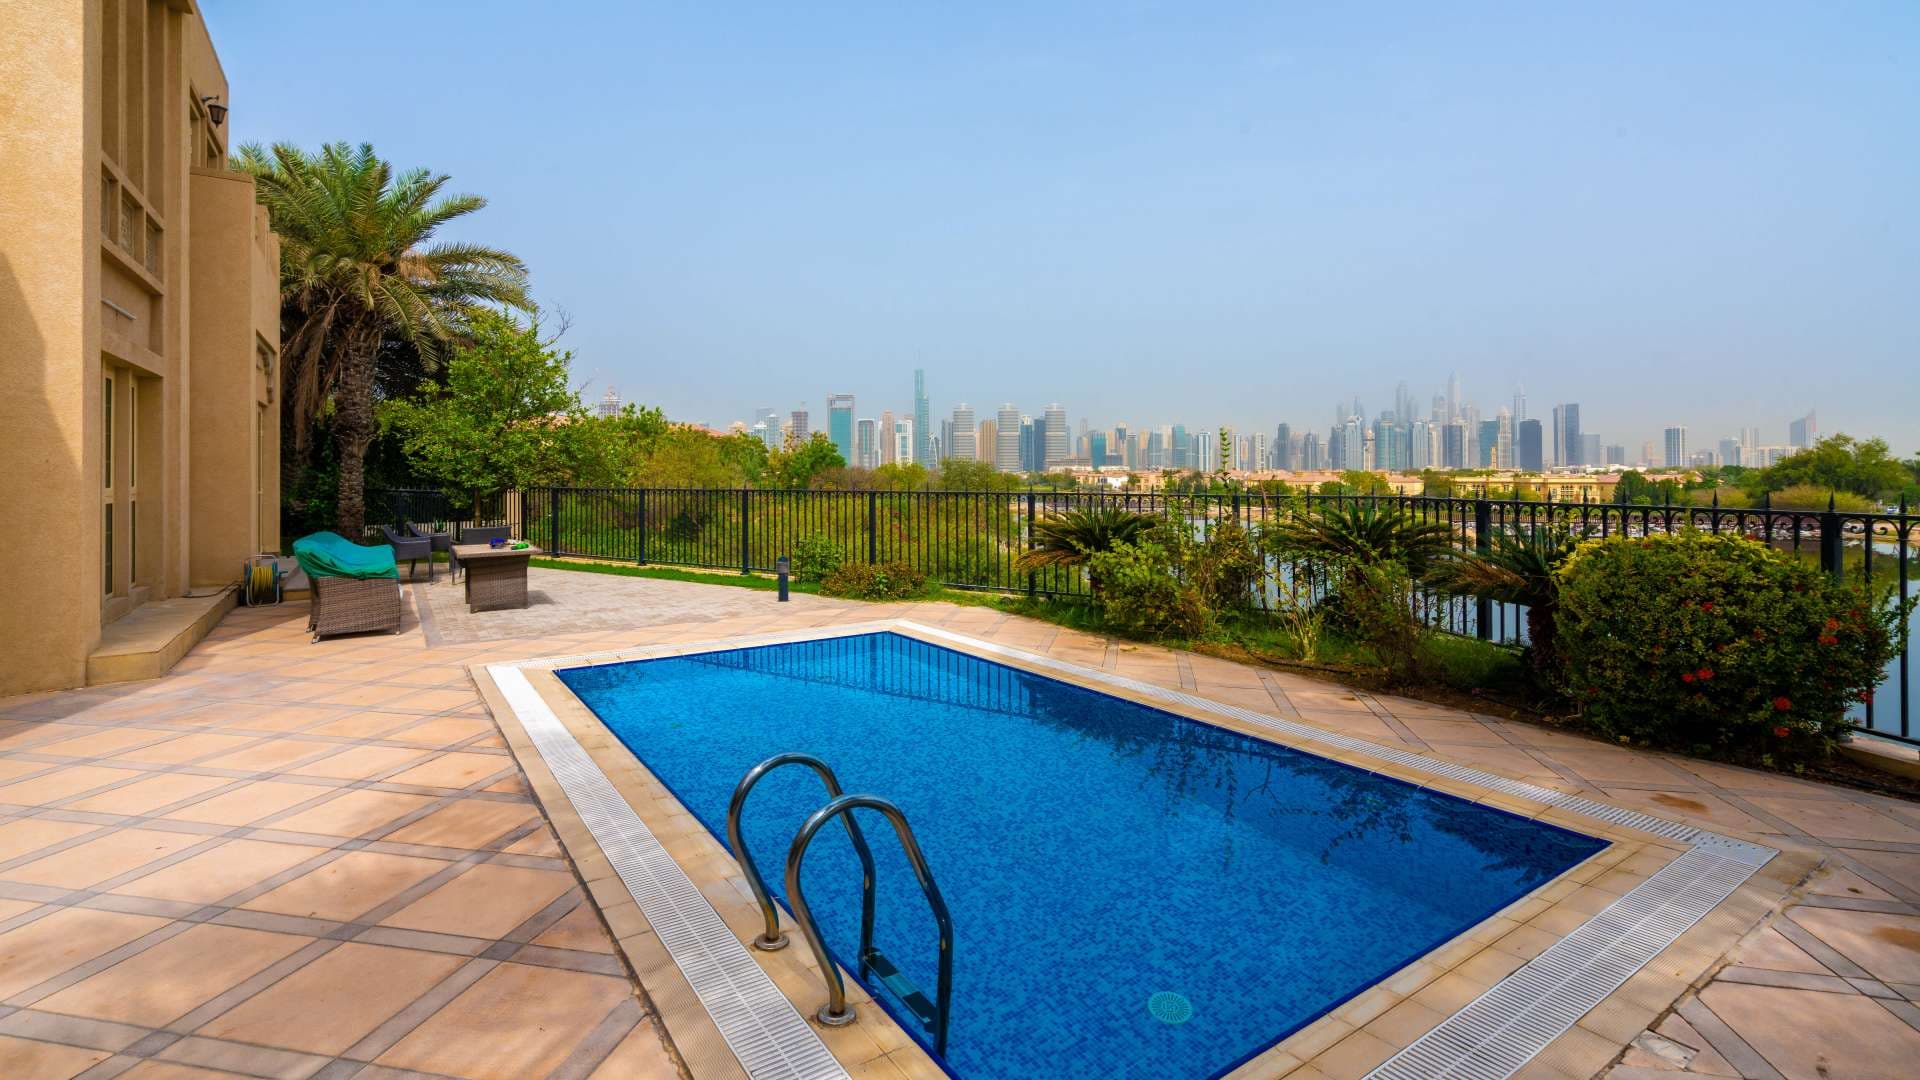 4 Bedroom Villa For Sale Jumeirah Islands Lp06087 2836e57b70a99c00.jpg